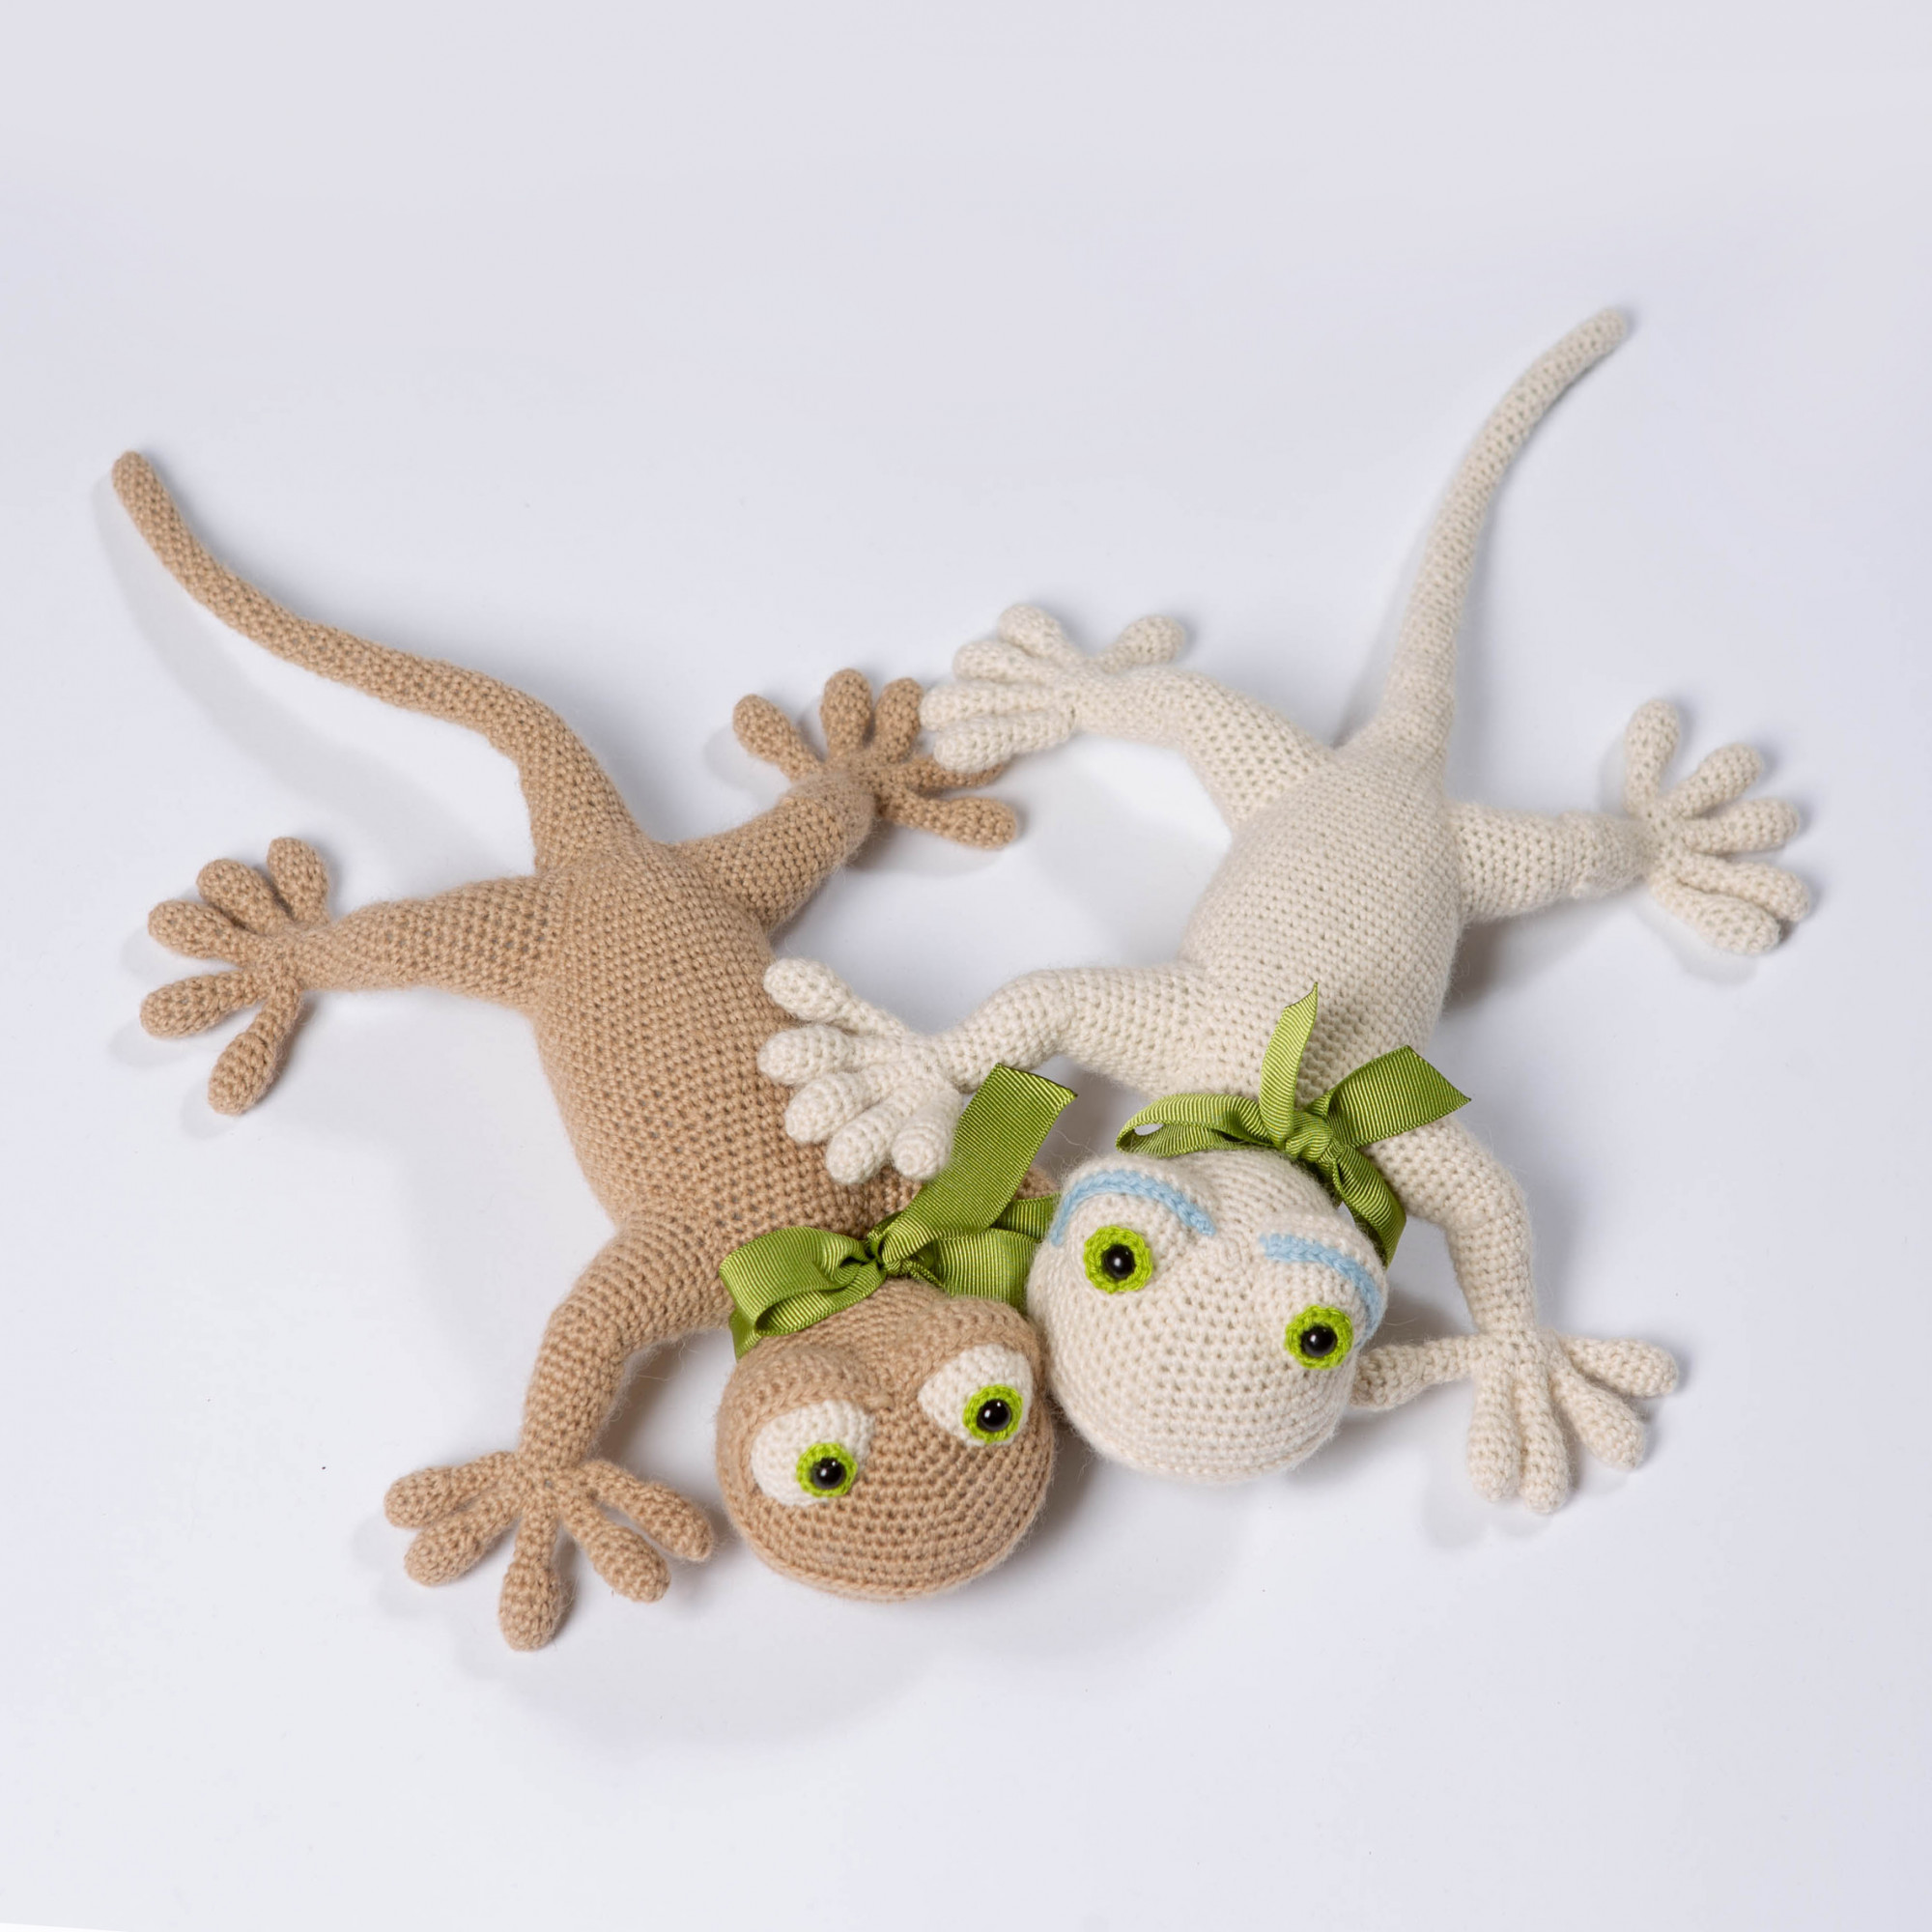 soft lizard toy birthday gift Gecko Plush stuffed toy lizard gift for kids soft gecko toy reptile plush gecko stuffie striped gecko